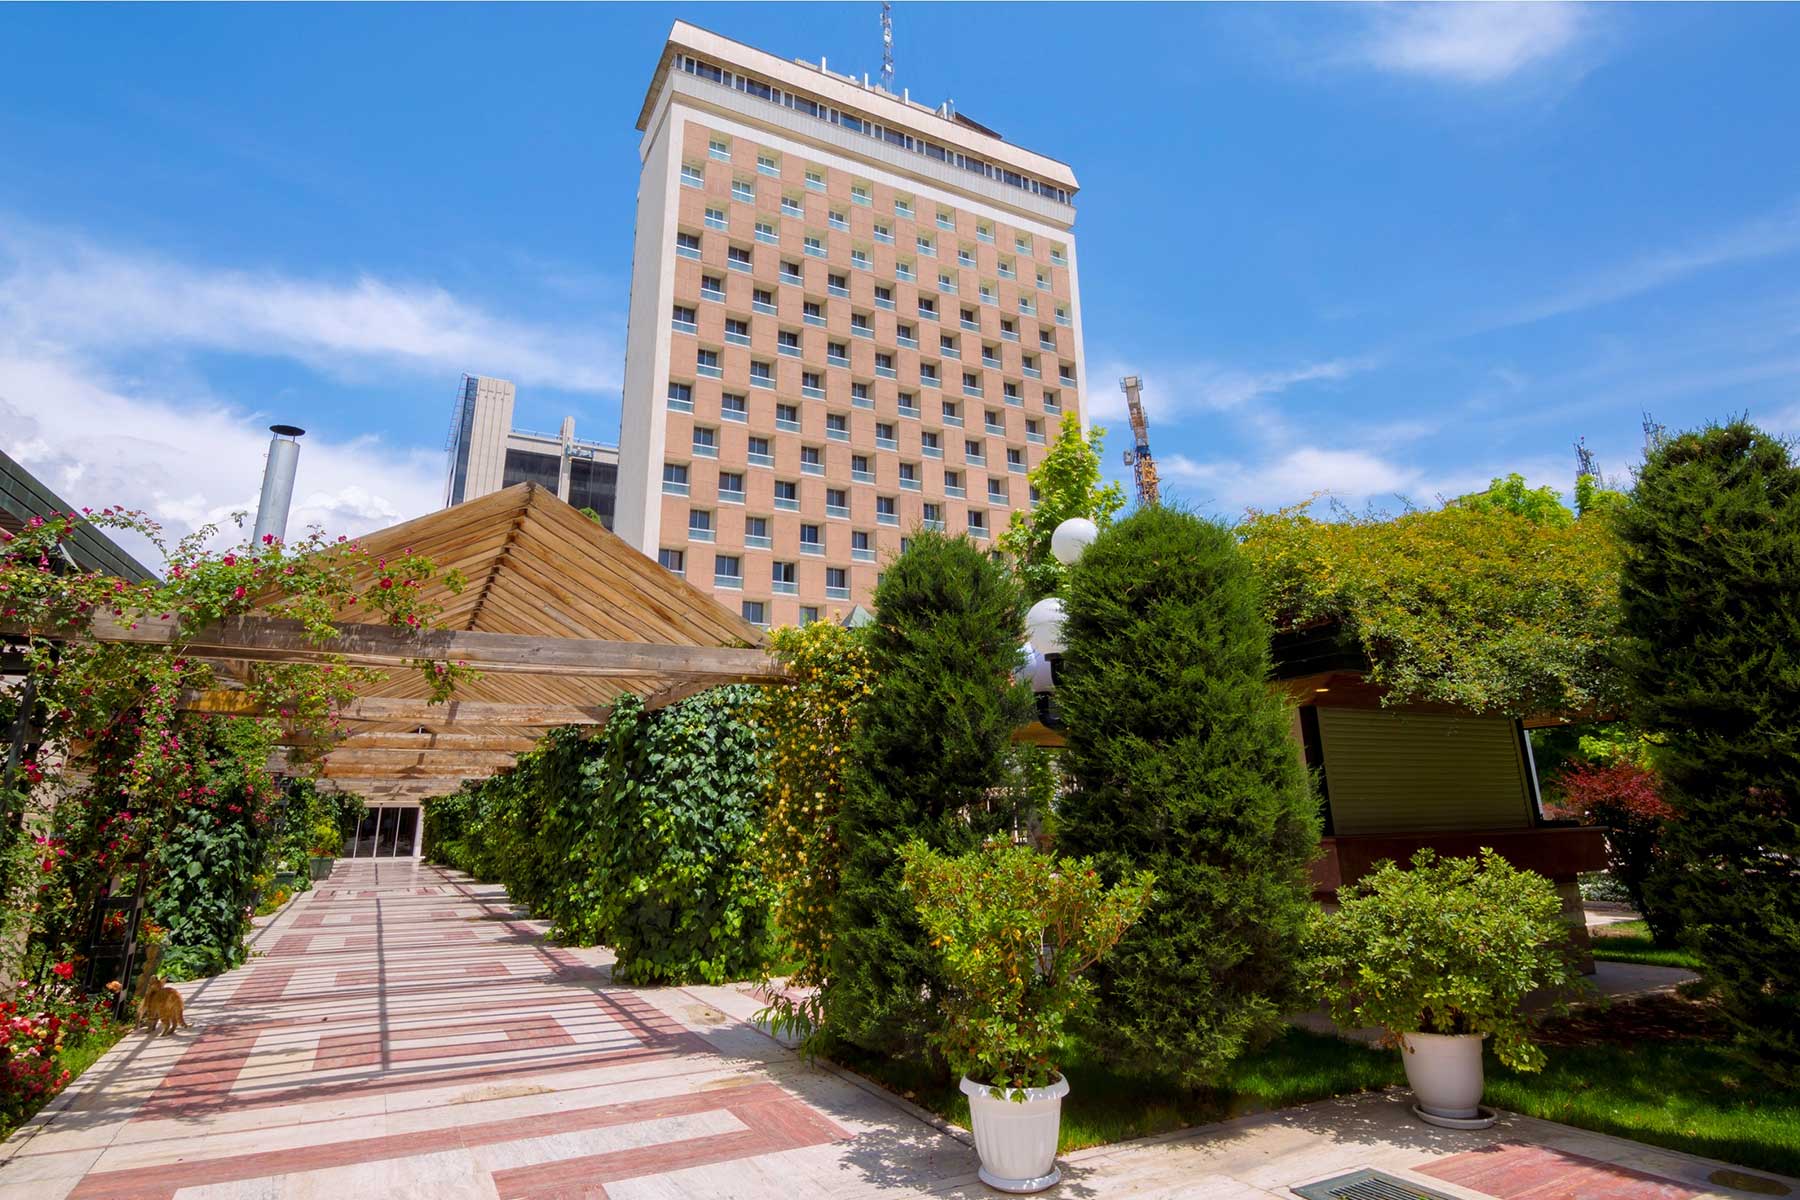 فندق هما طهران